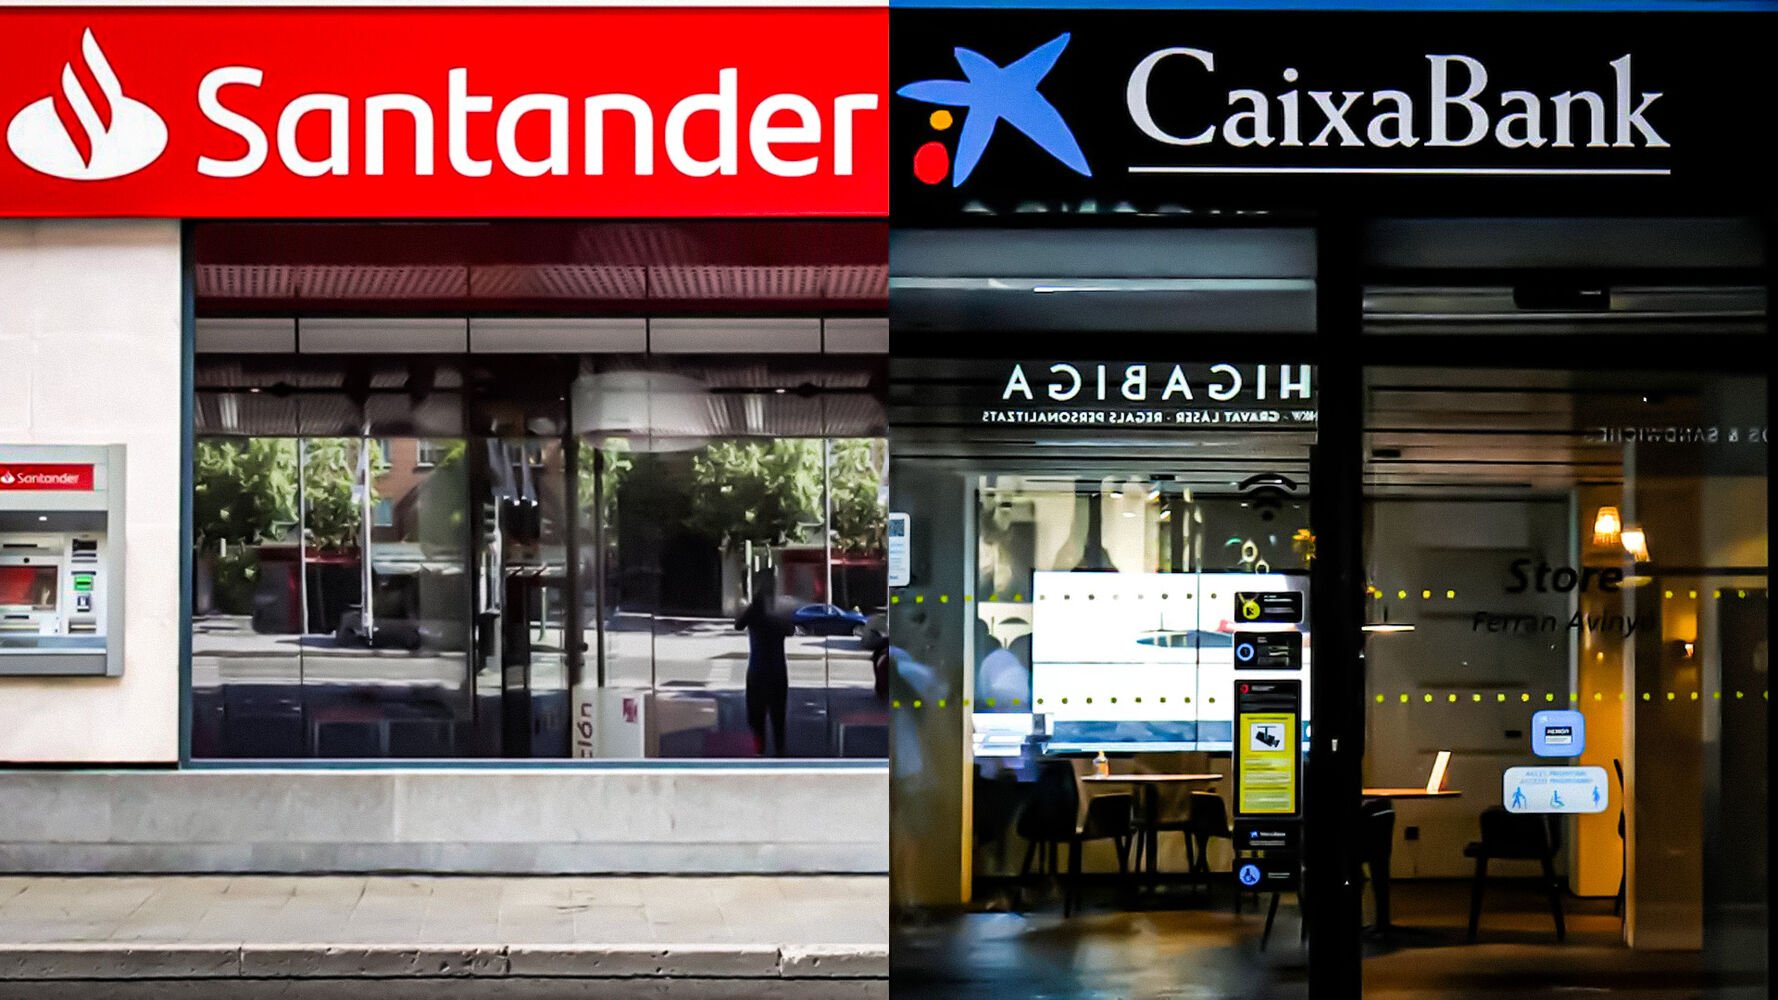 Los analistas ven más potencial en Banco Santander y Caixabank tras sus cuentas